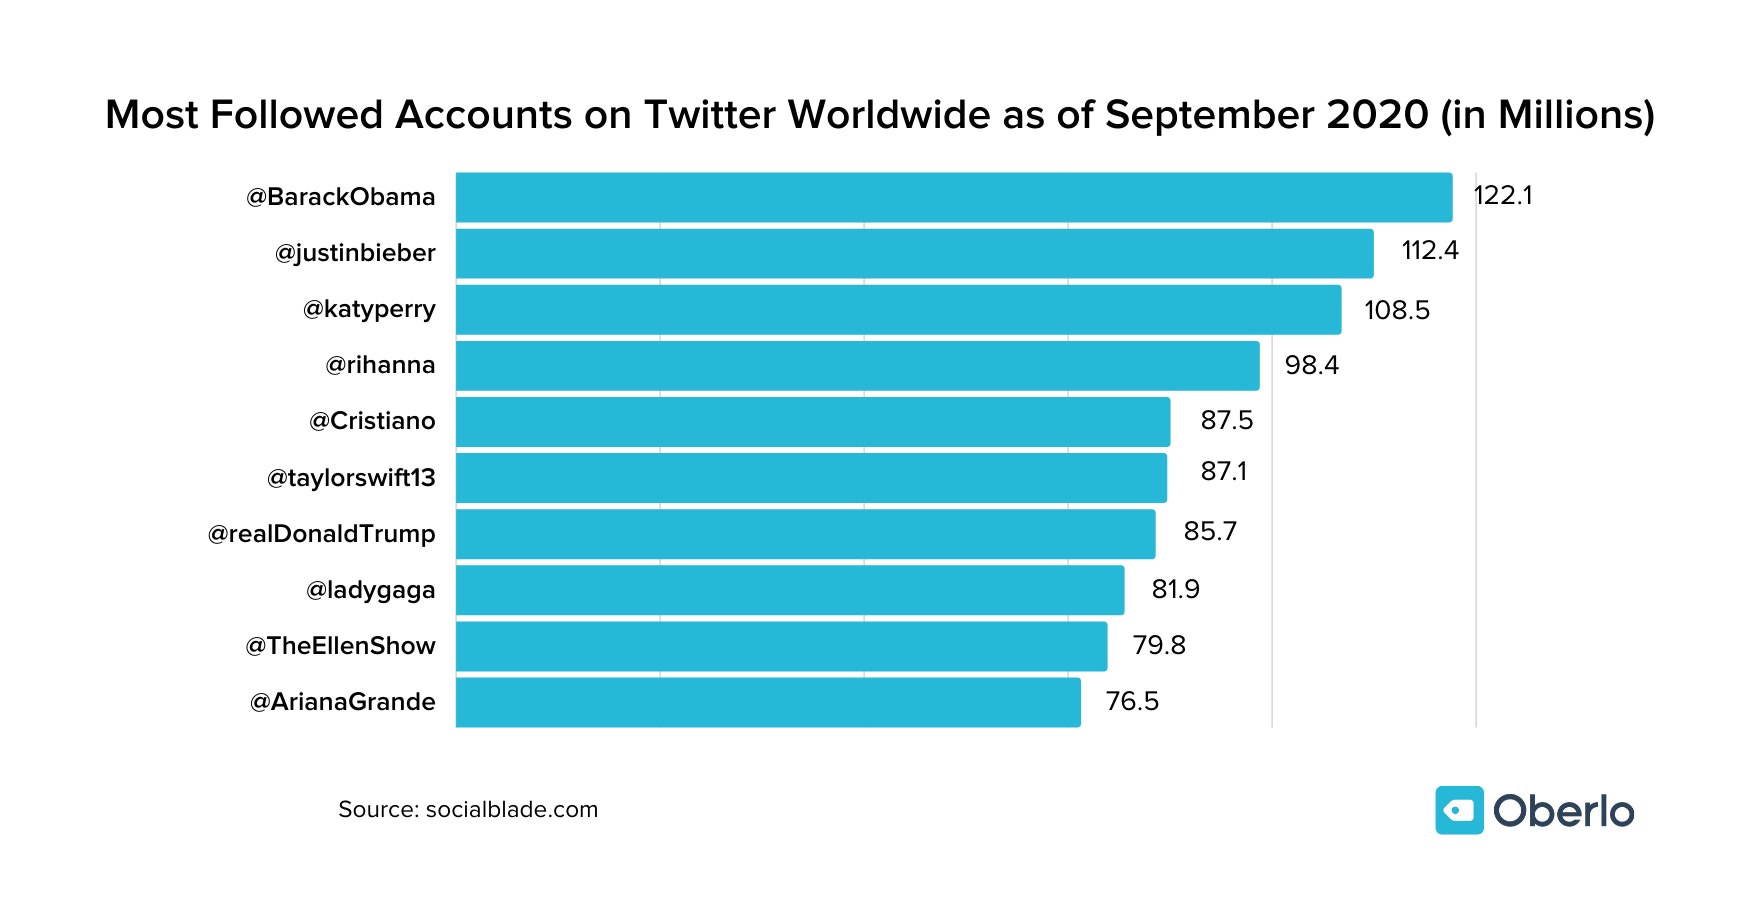 截至2020年9月，全球推特上关注最多的账户(百万)